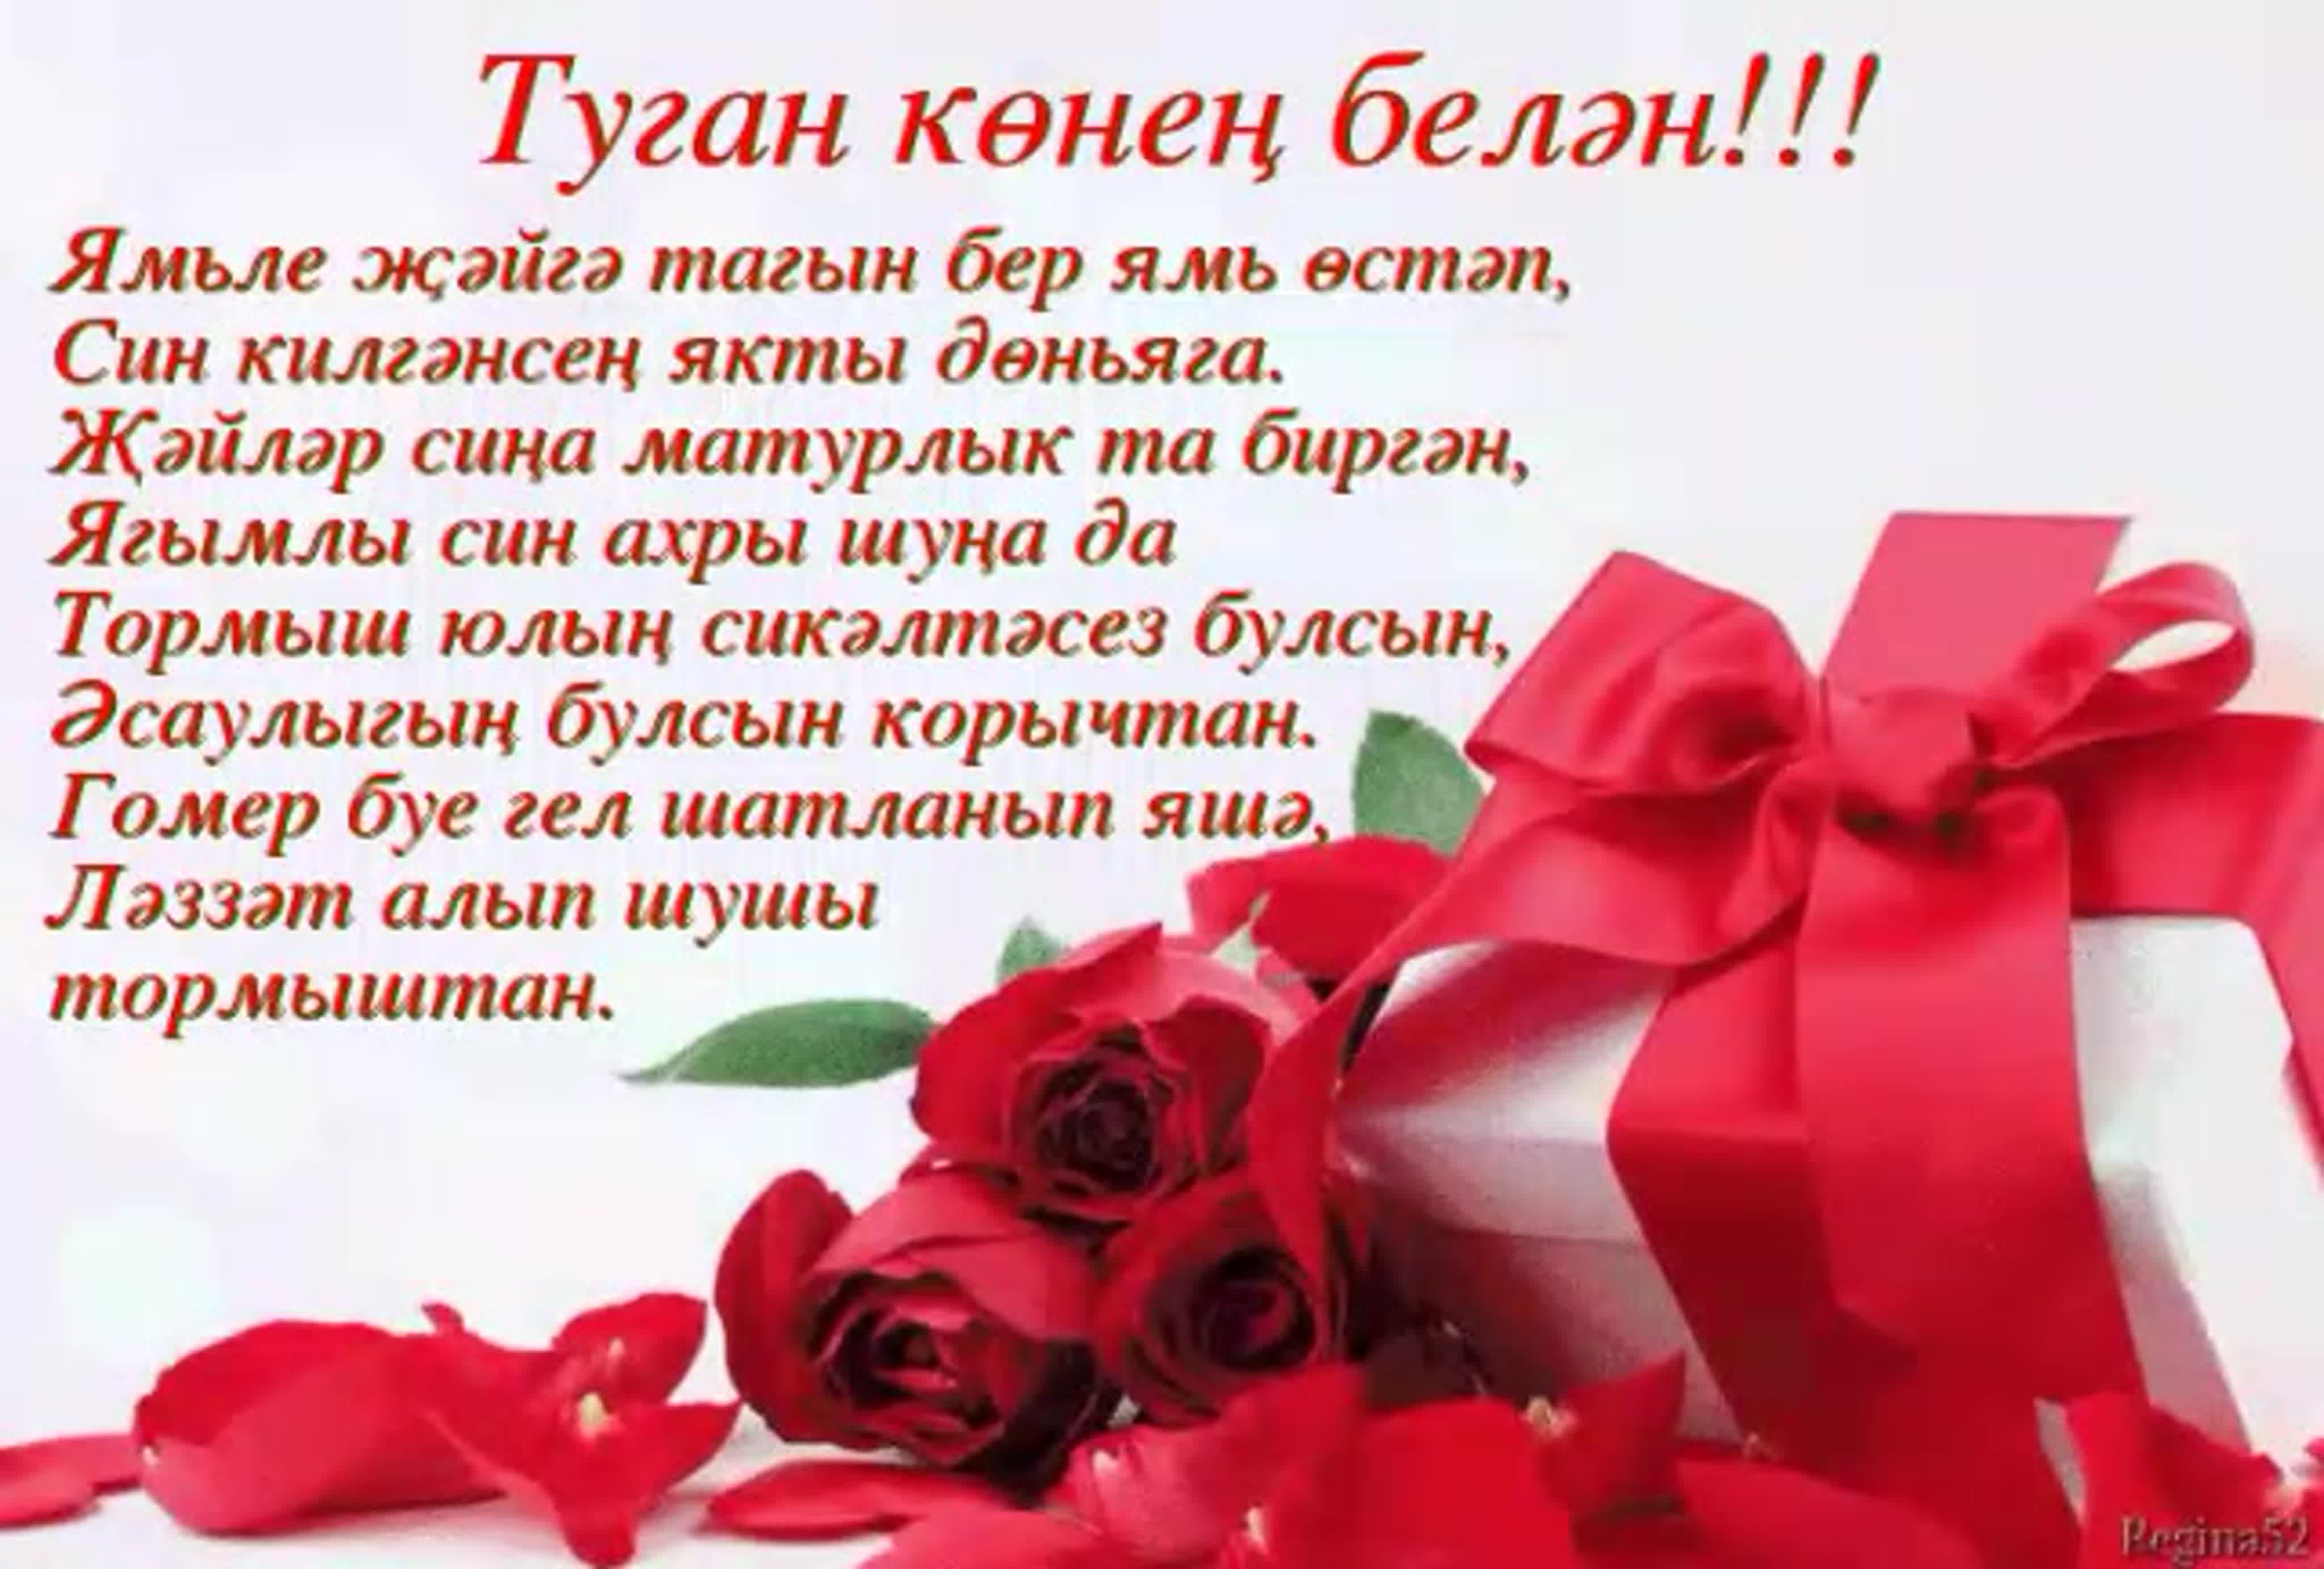 Татарские поздравления любимому. Поздравления с днём с днём рождения на татарском языке. Поздравления с днём рождения женщине на татарском языке. Туган кон. С днём рождения на татарском языке женщине красивые пожеланиями.